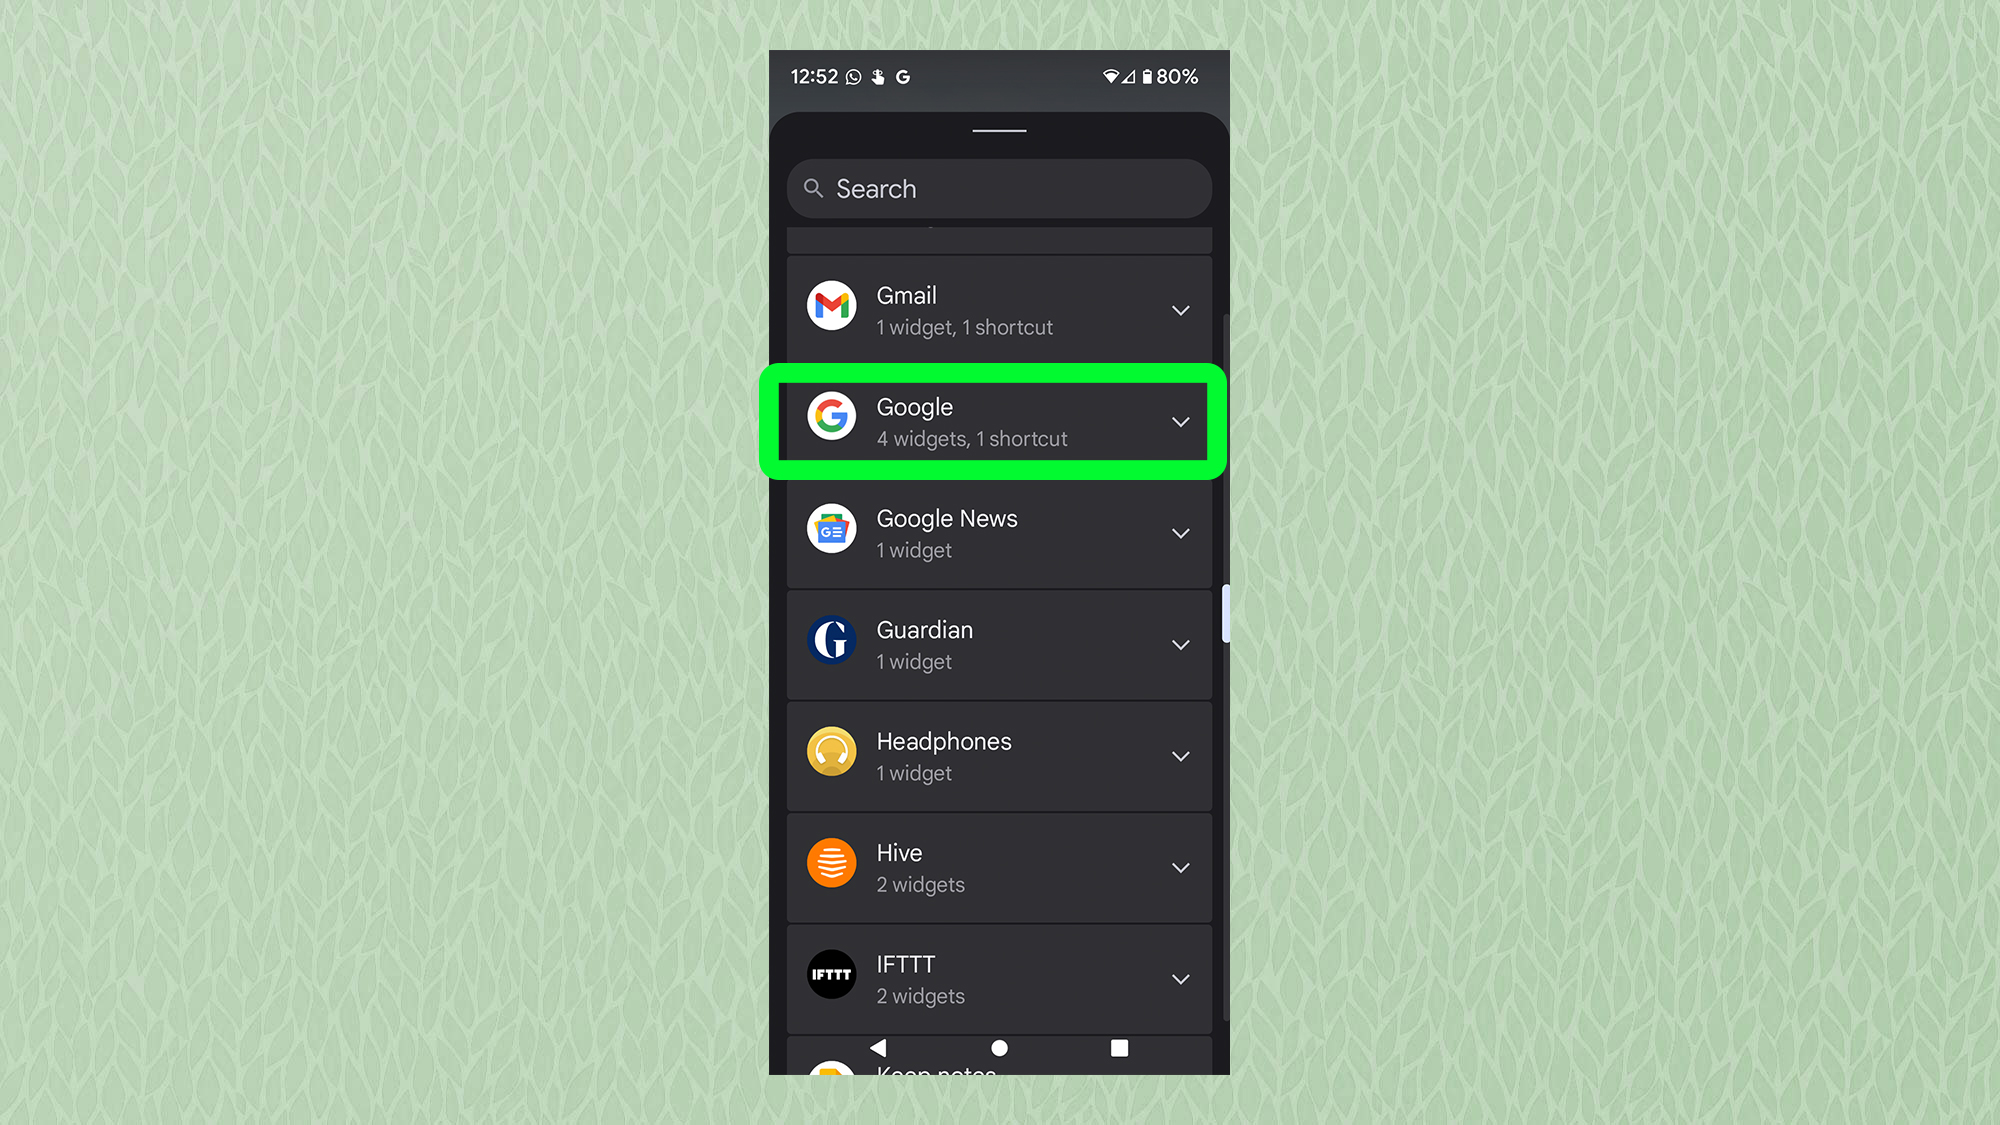 Снимок экрана с Android, показывающий меню виджетов с выделенным Google